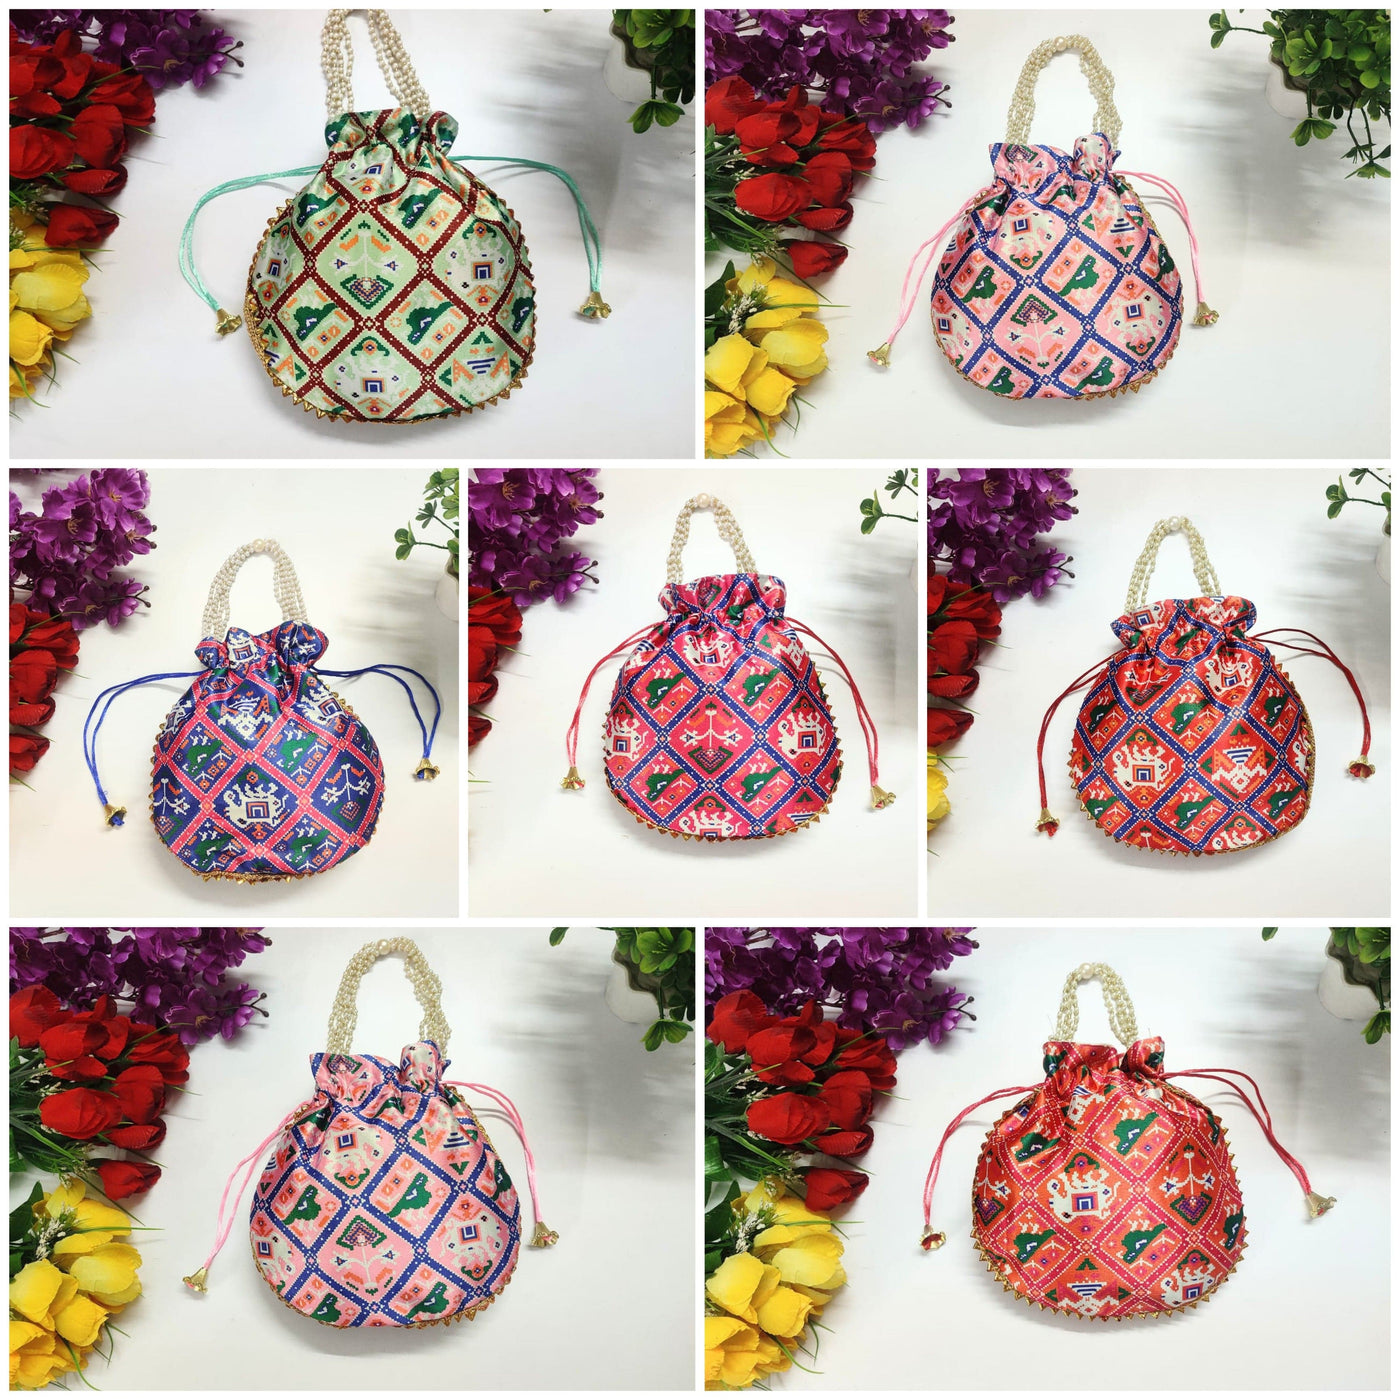 LAMANSH ® Women's Potli Bag Pack of 10 LAMANSH® (Pack of 10 Pcs) Potli bags for women handbags traditional Indian Wristlet with Gota Work